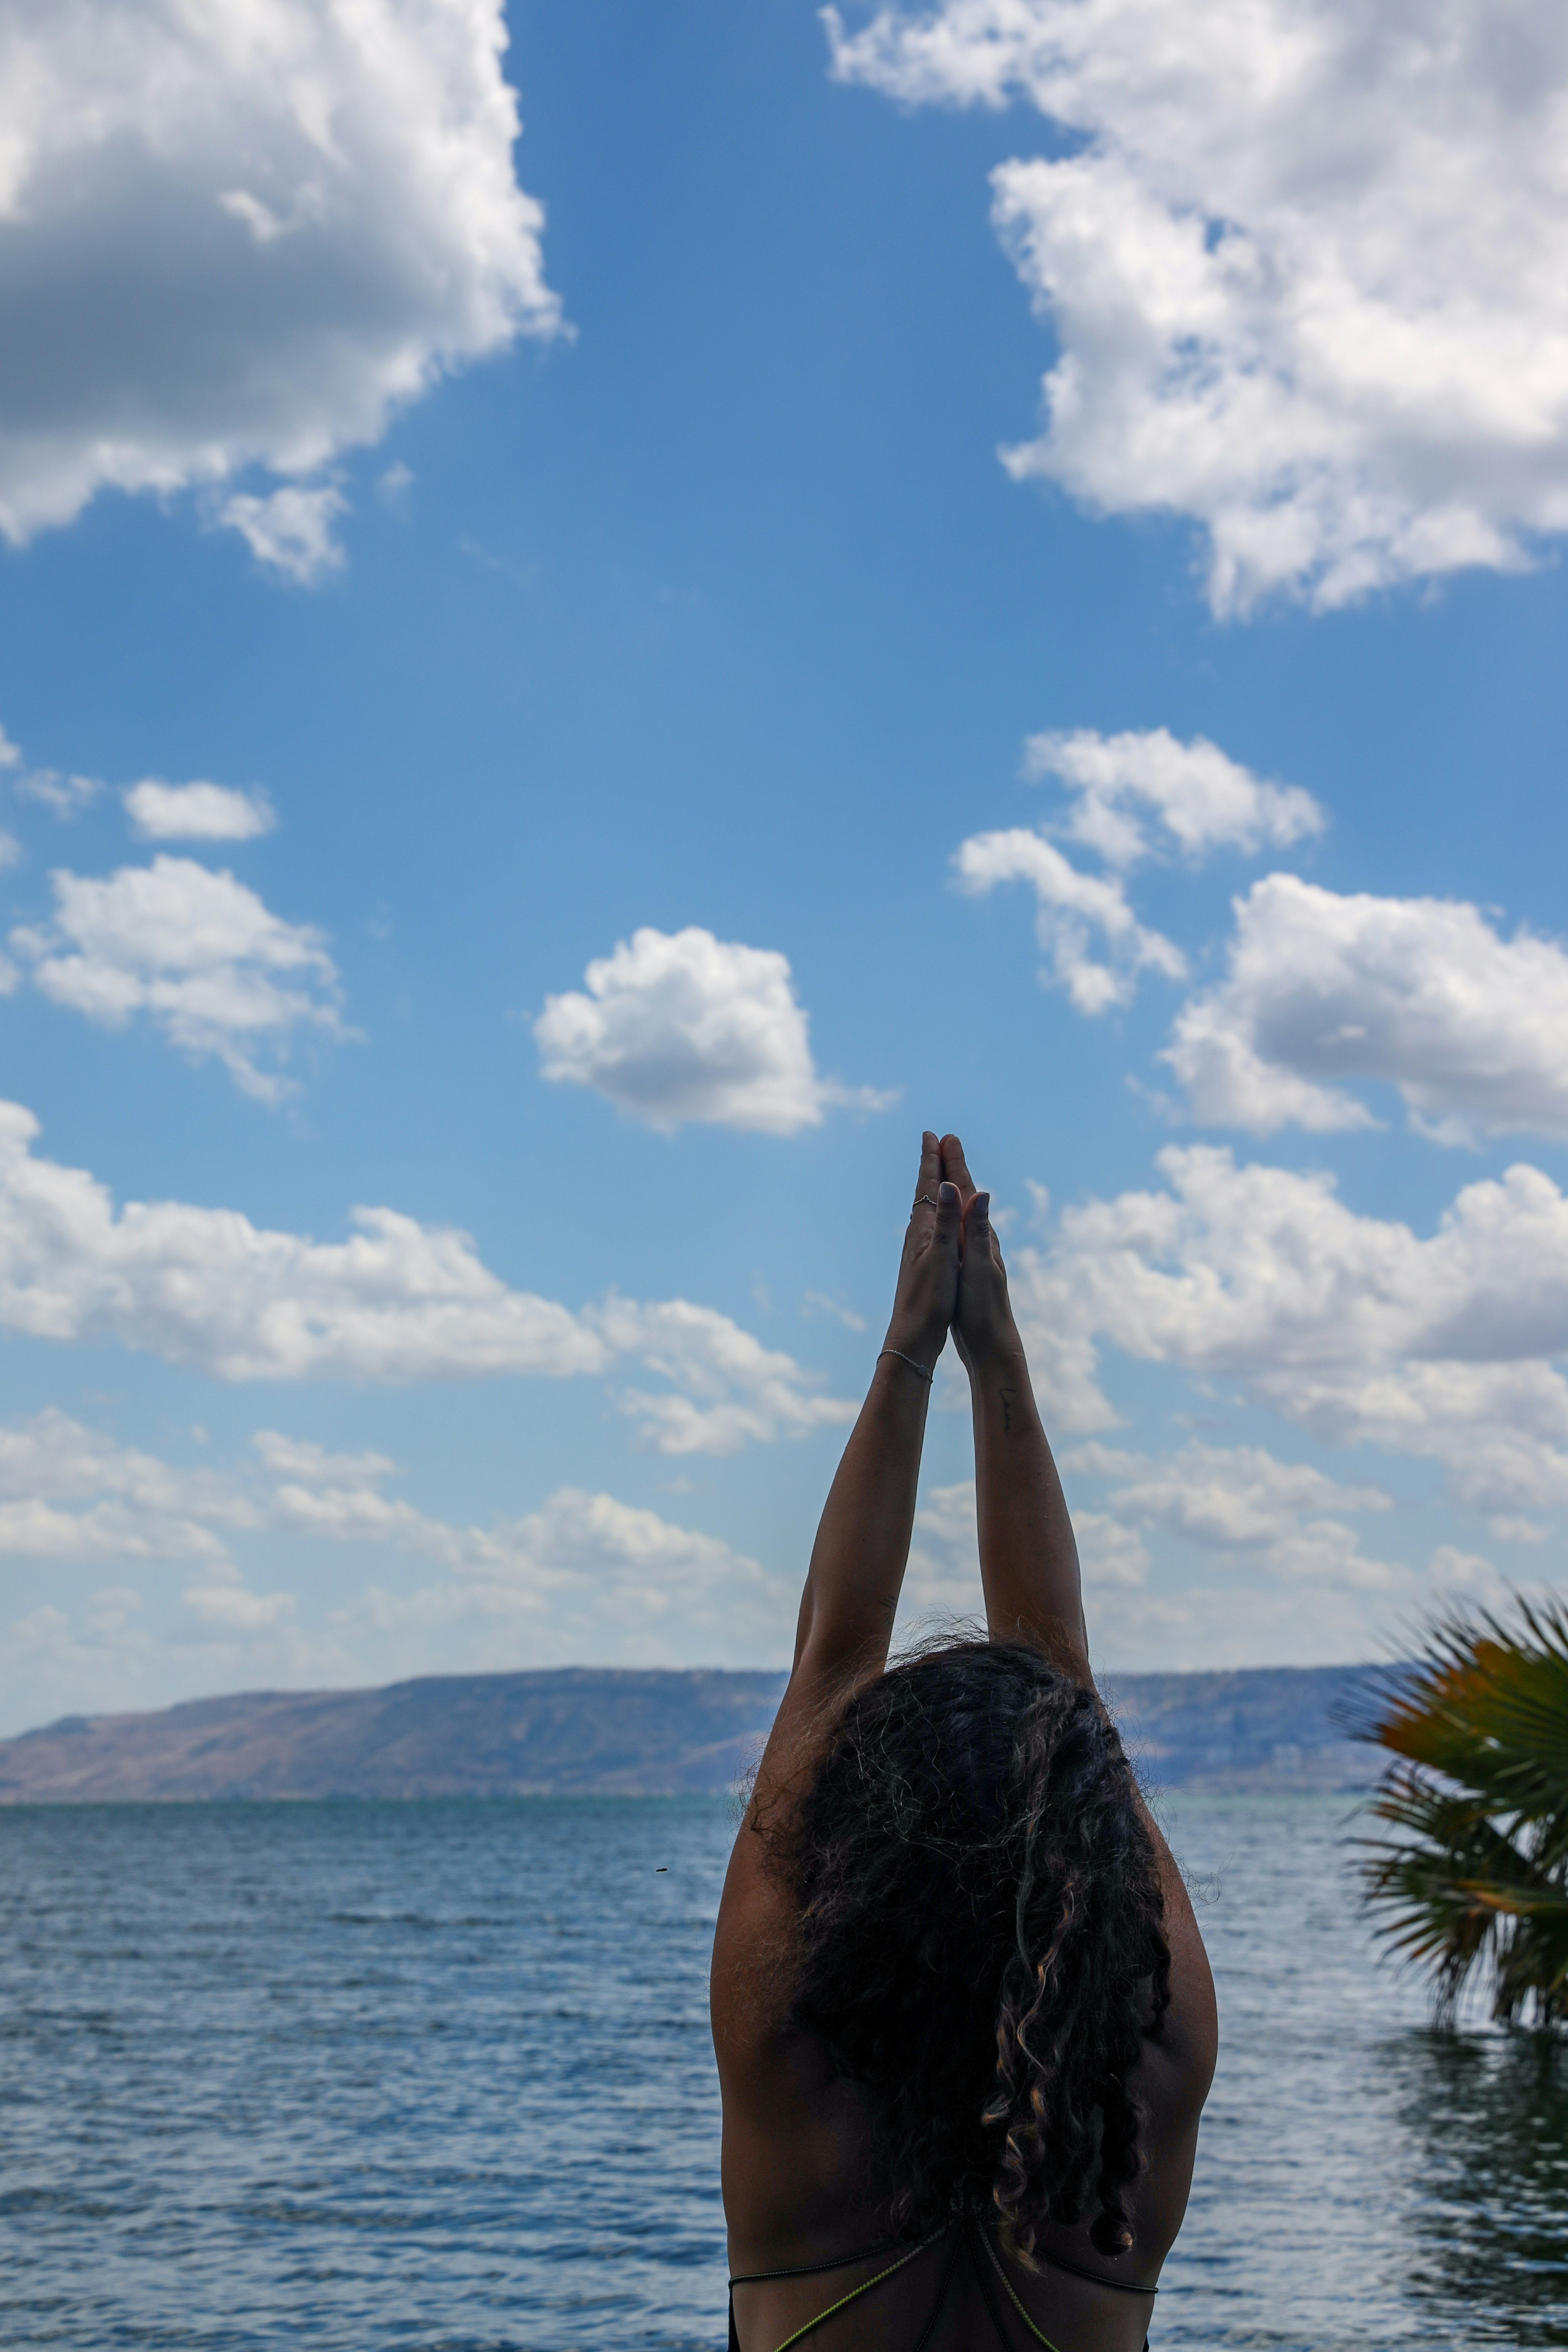 Meditation 
@sea of Galilee, Israel 